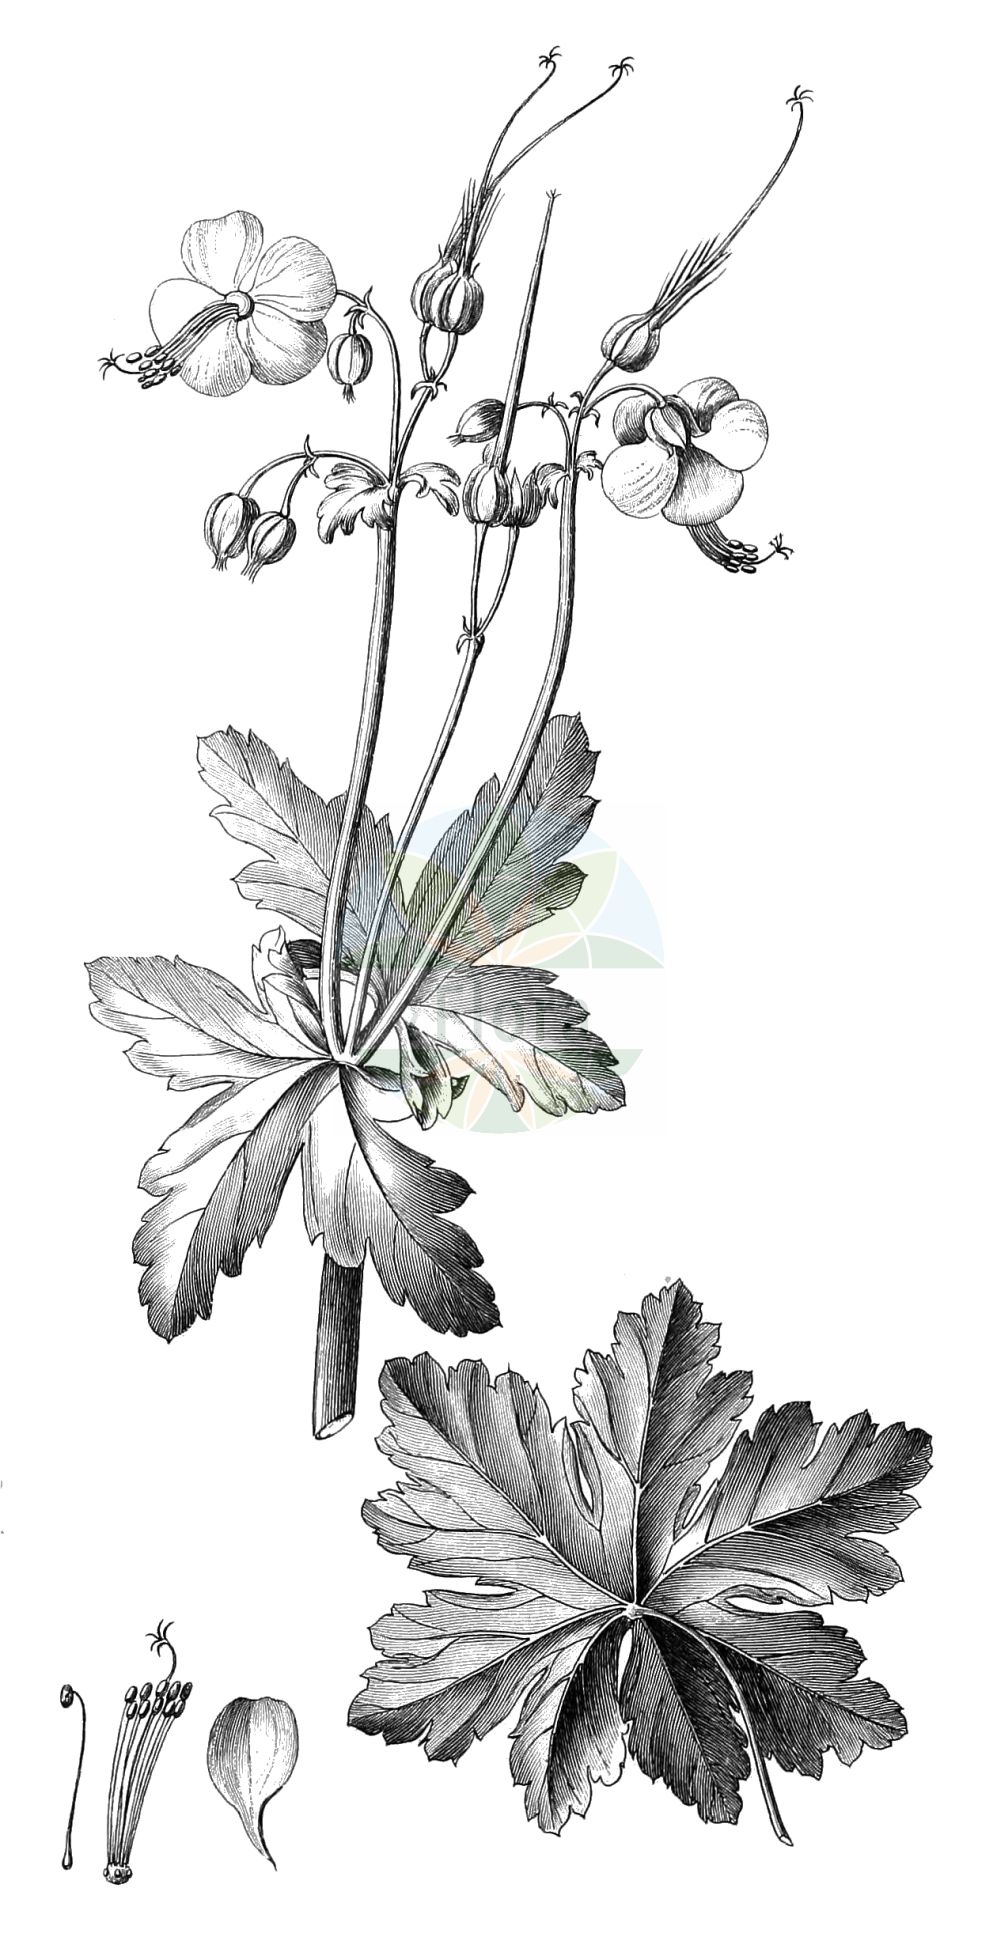 Historische Abbildung von Geranium macrorrhizum (Felsen-Storchschnabel - Rock Crane's-bill). Das Bild zeigt Blatt, Bluete, Frucht und Same. ---- Historical Drawing of Geranium macrorrhizum (Felsen-Storchschnabel - Rock Crane's-bill). The image is showing leaf, flower, fruit and seed.(Geranium macrorrhizum,Felsen-Storchschnabel,Rock Crane's-bill,Geranium balkanum,Geranium kikianum,Geranium lugubre,Geranium macrorrhizum,Felsen-Storchschnabel,Rock Crane's-bill,Geranium,Storchschnabel,Crane's-bill,Geraniaceae,Storchschnabelgewächse,Geranium family,Blatt,Bluete,Frucht,Same,leaf,flower,fruit,seed)